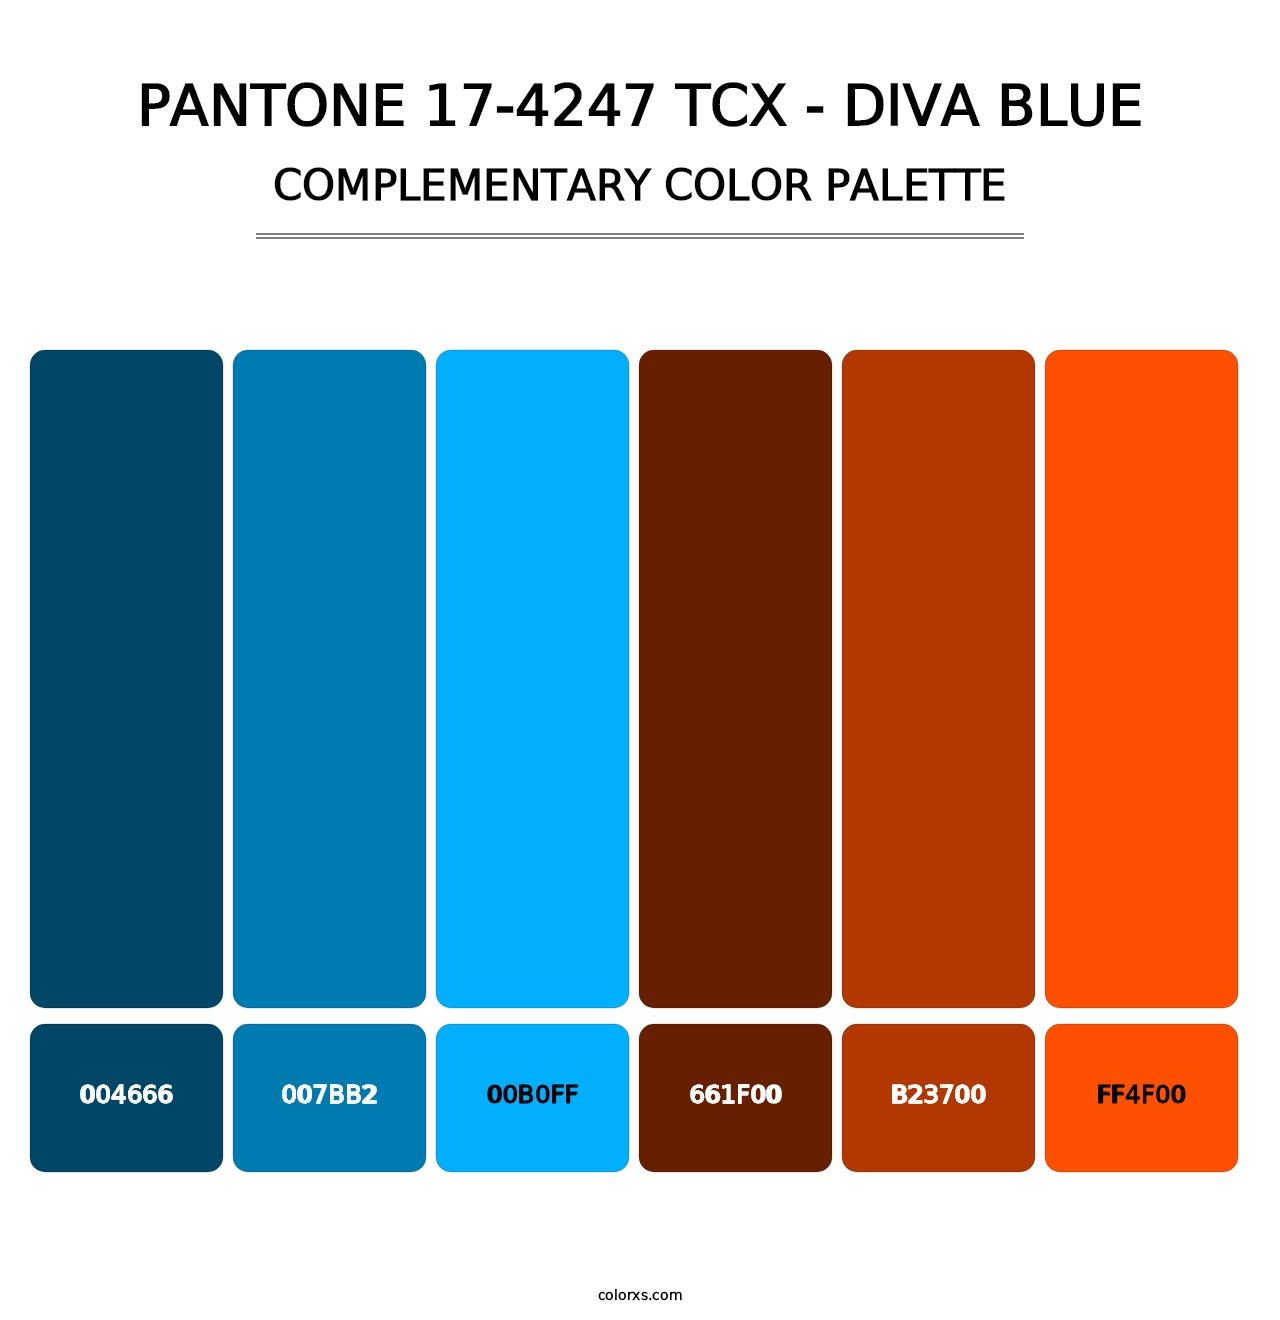 PANTONE 17-4247 TCX - Diva Blue - Complementary Color Palette